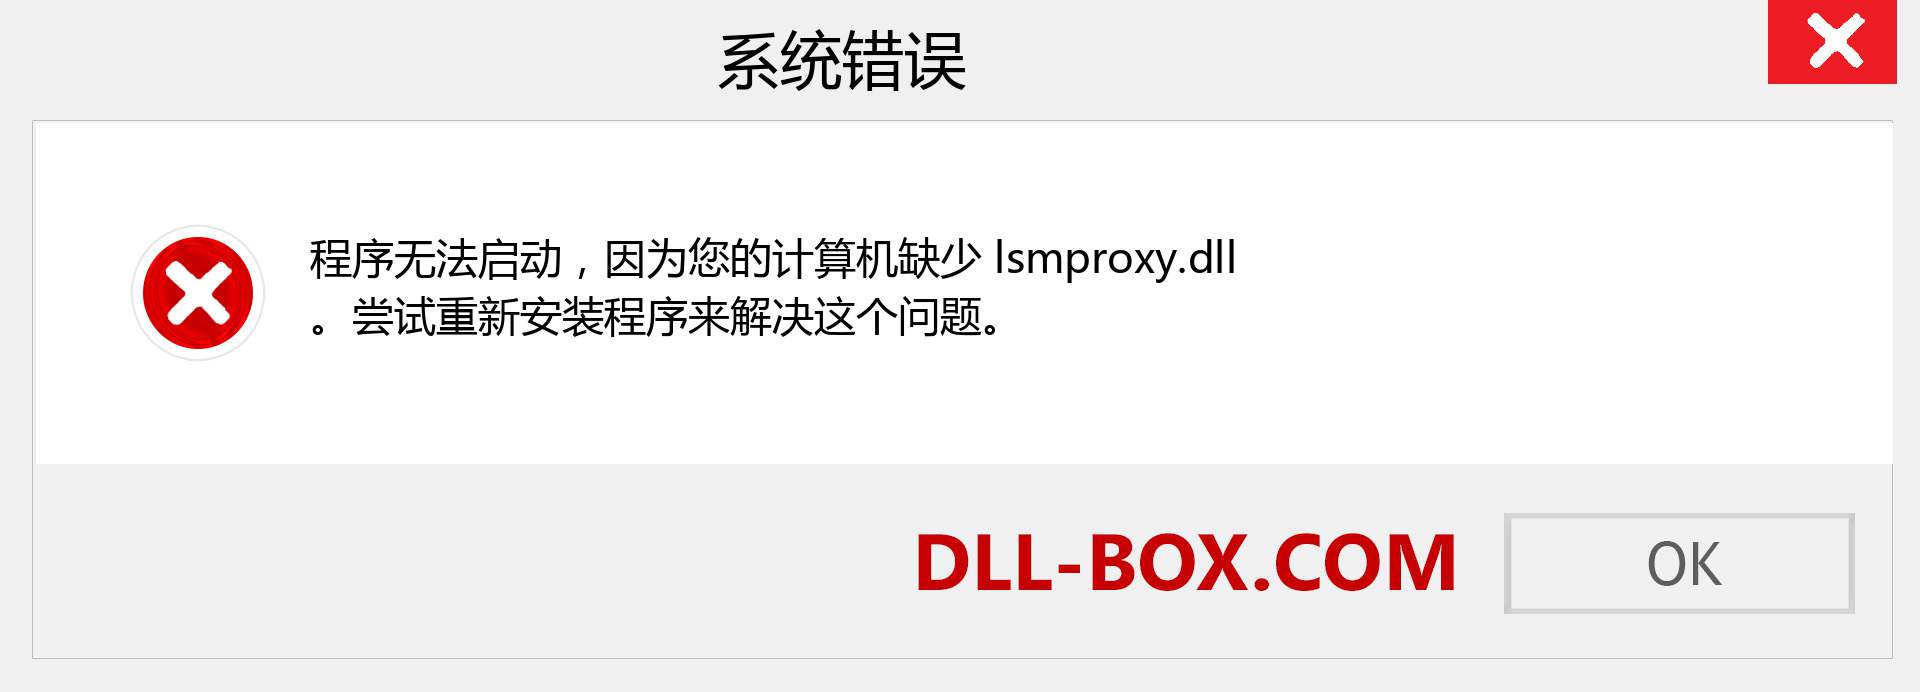 lsmproxy.dll 文件丢失？。 适用于 Windows 7、8、10 的下载 - 修复 Windows、照片、图像上的 lsmproxy dll 丢失错误